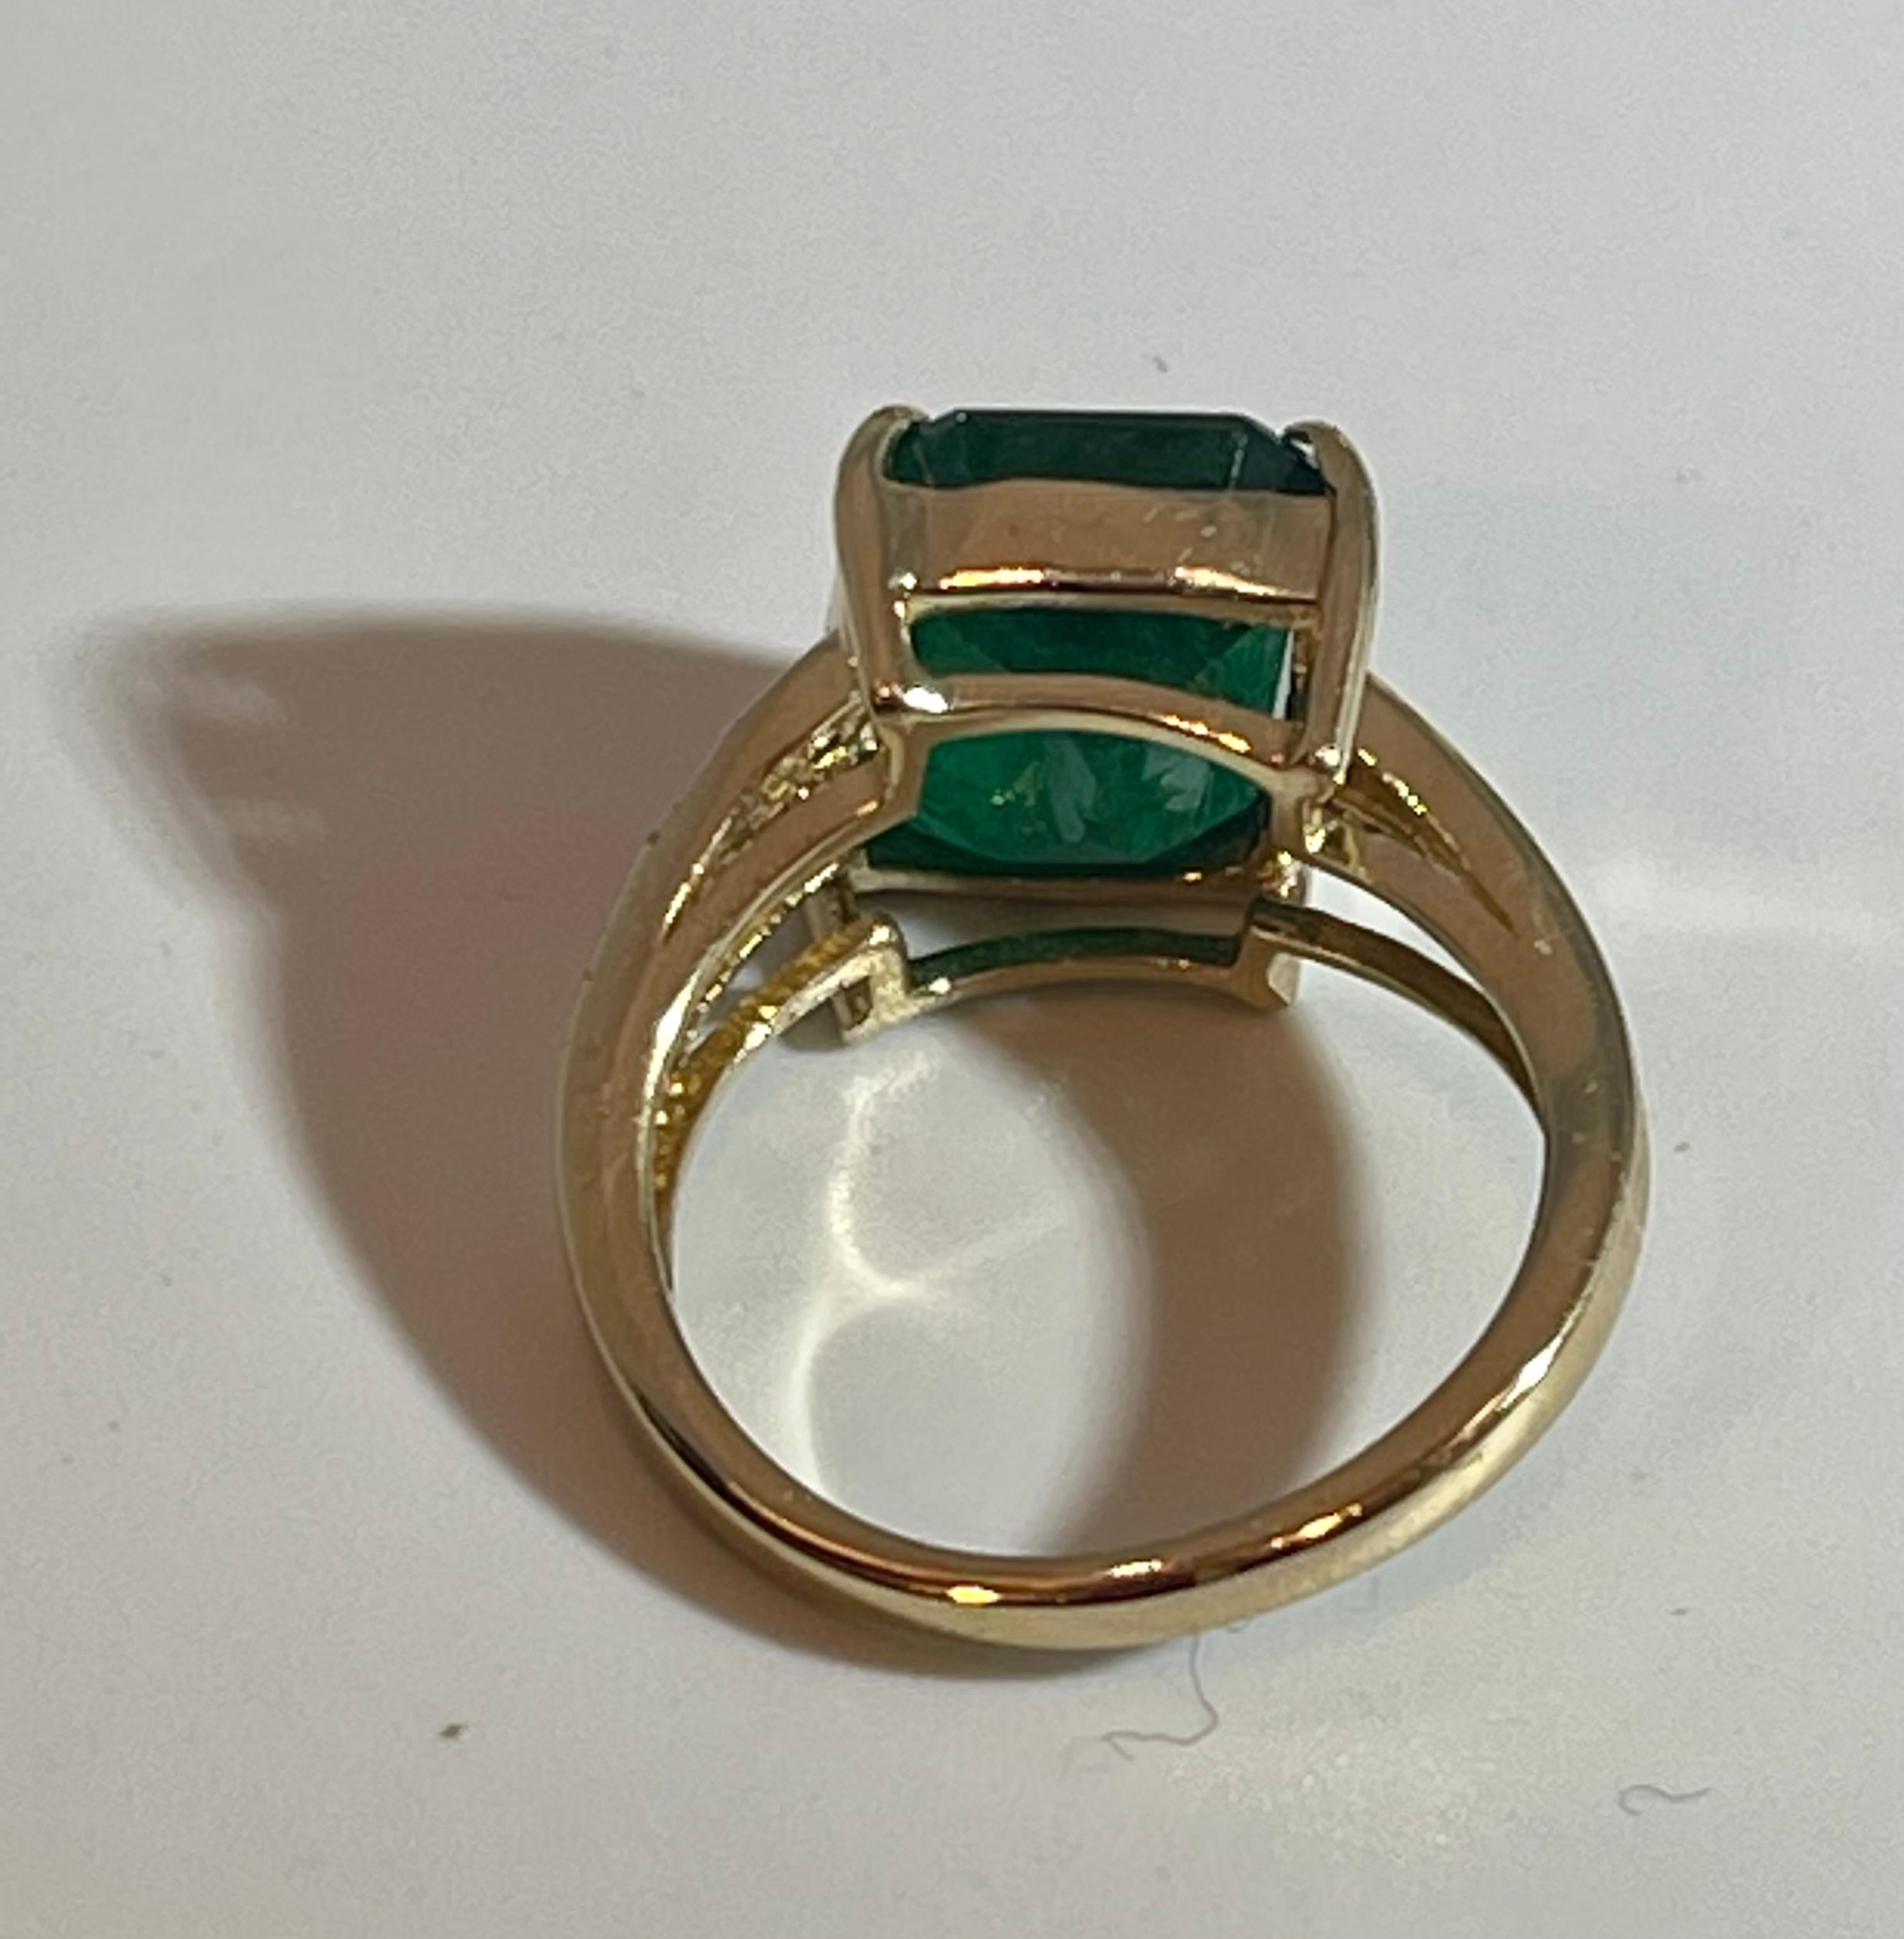 4.5 Carat Natural Emerald Cut Emerald Ring 14 Karat Yellow Gold 6